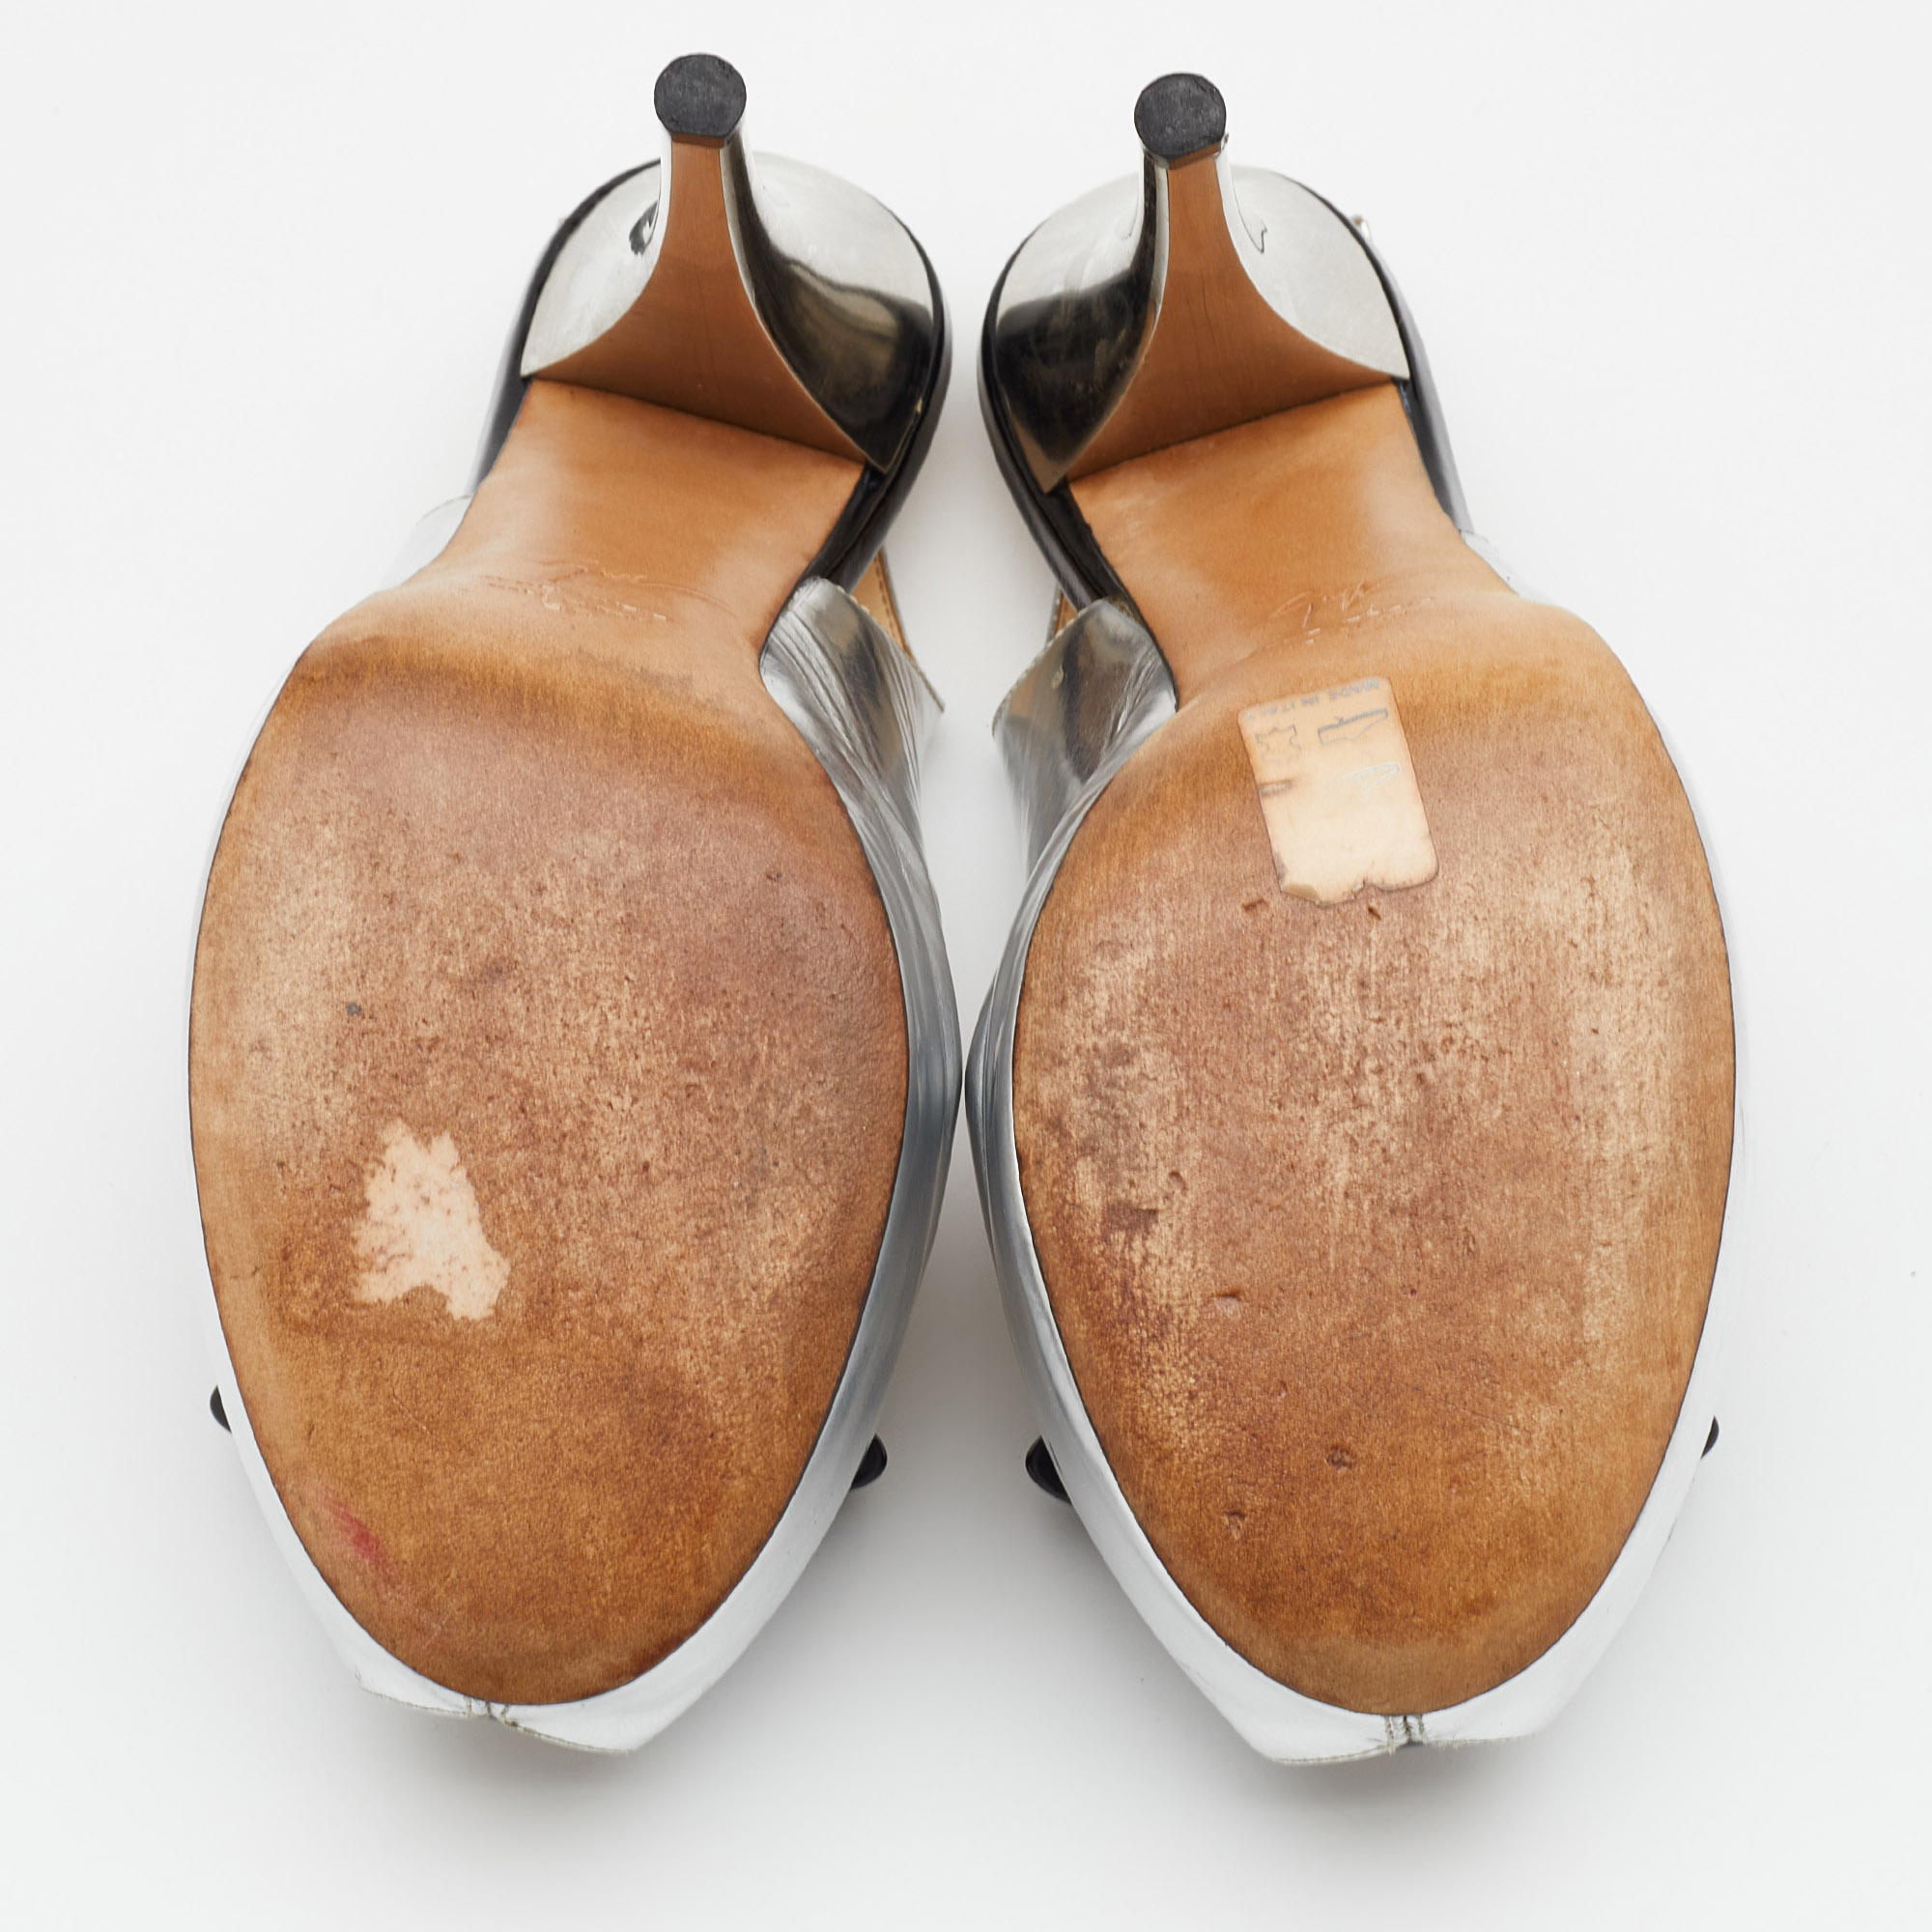 Giuseppe Zanotti Silver/Black Leather Bow Platform Slingback Sandals Size 38